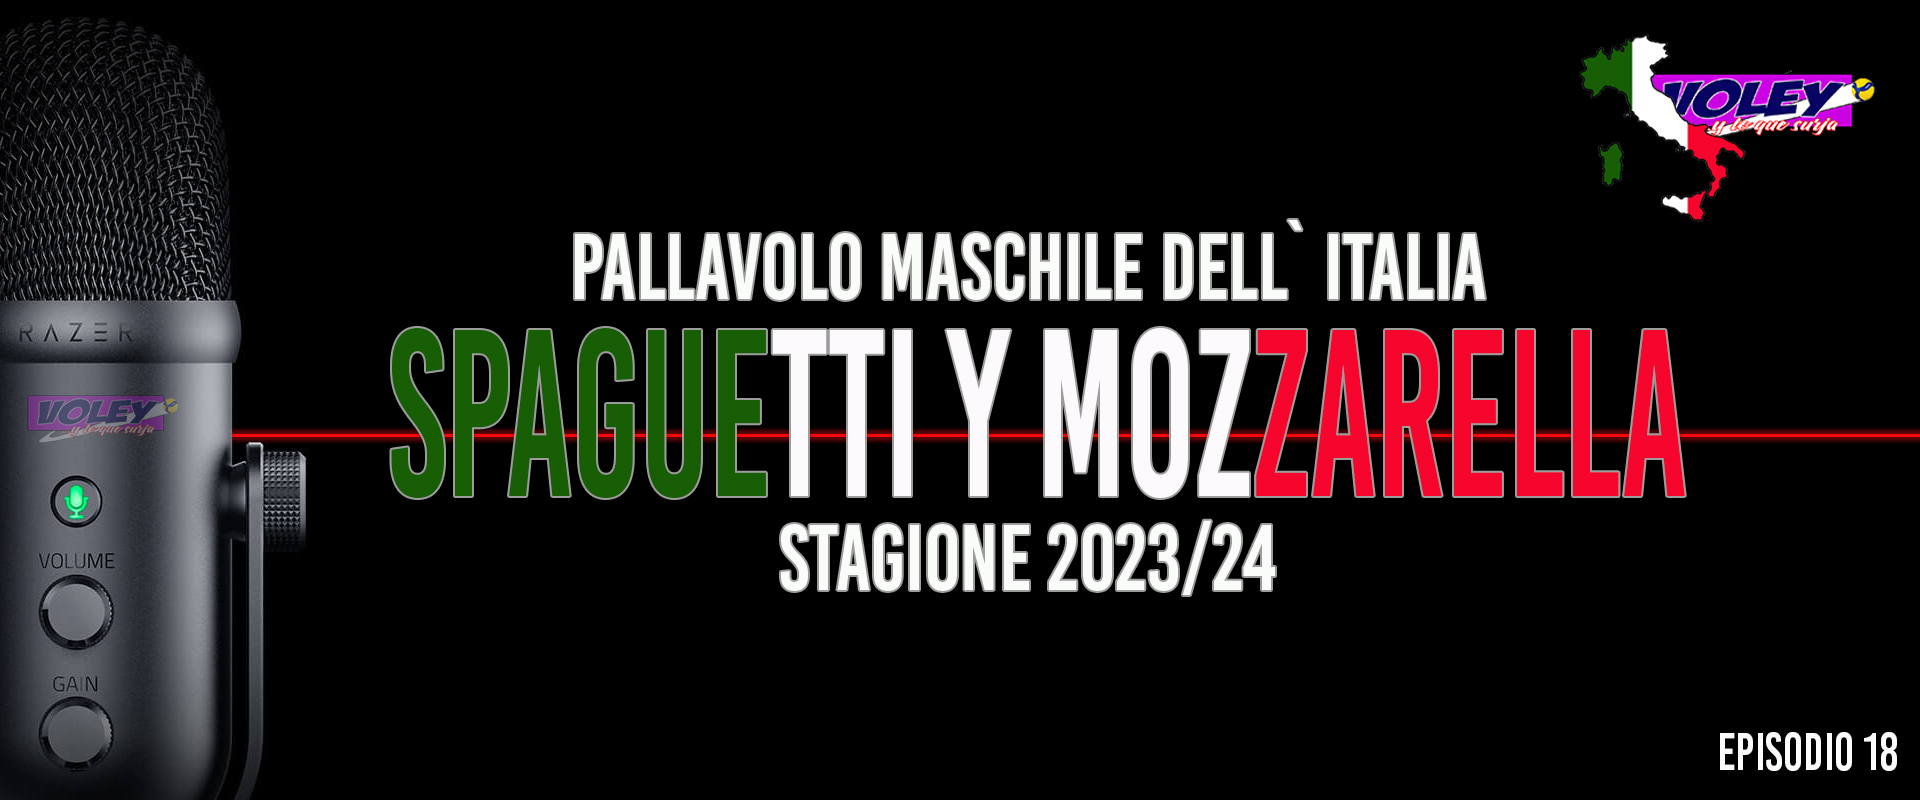 Quiero Spaguetti y Mozzarella. Episodio 18. En-tre-vis-tón con Angel Trinidad (Taranto)